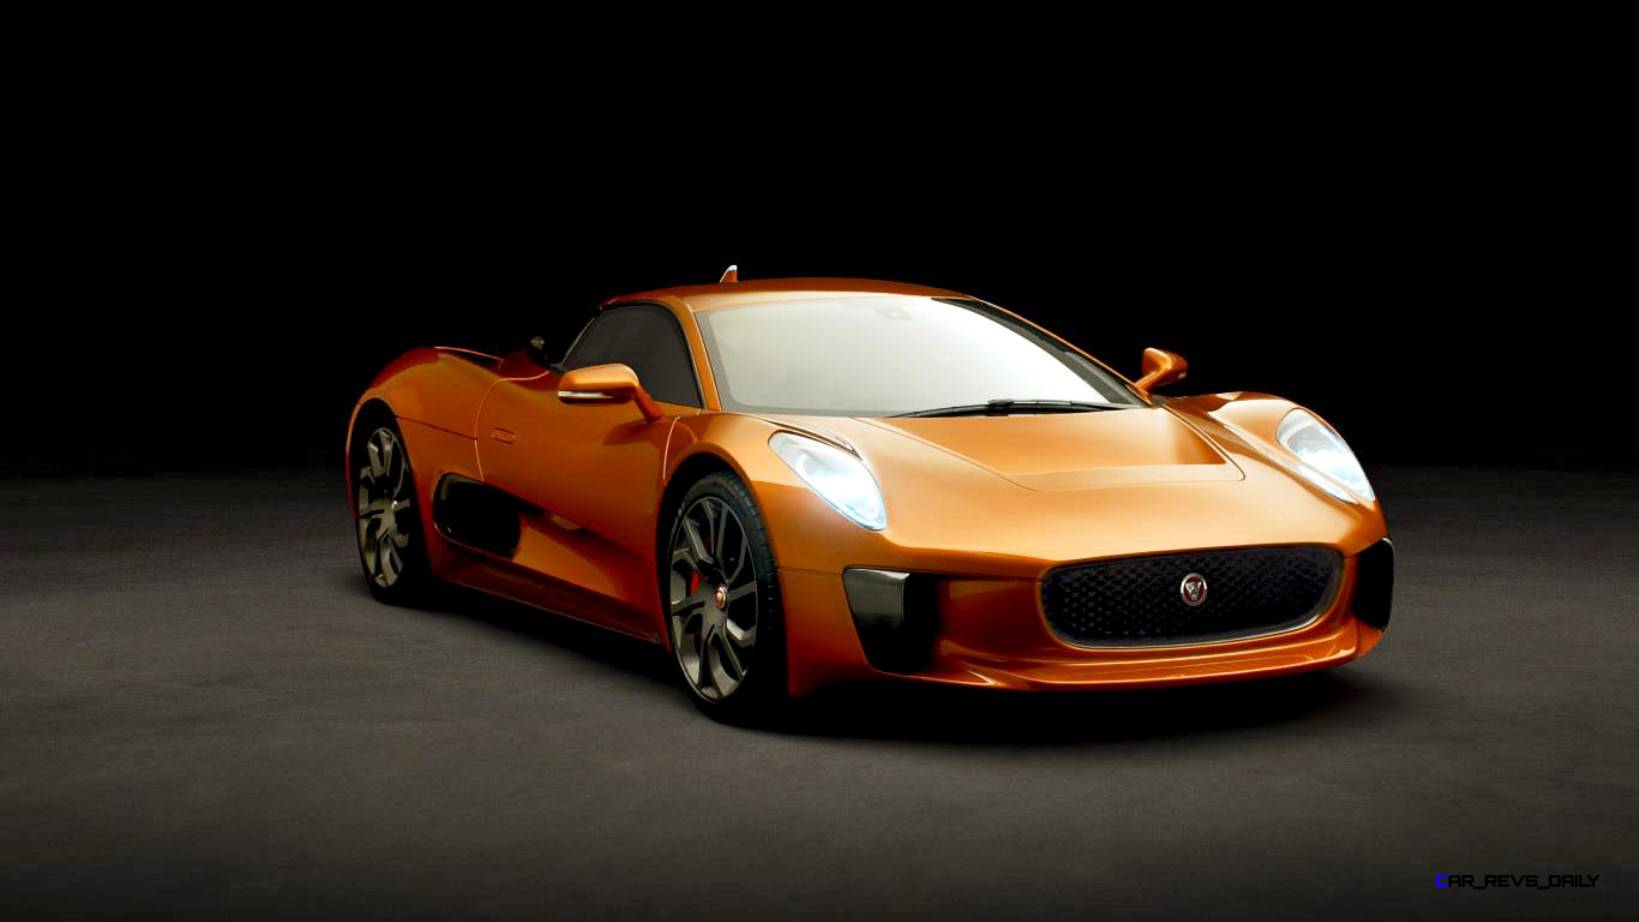 49 Top Pictures Orange Sports Car In Spectre / Lamborghini prepara un modelo híbrido para 2020, el lujo ...